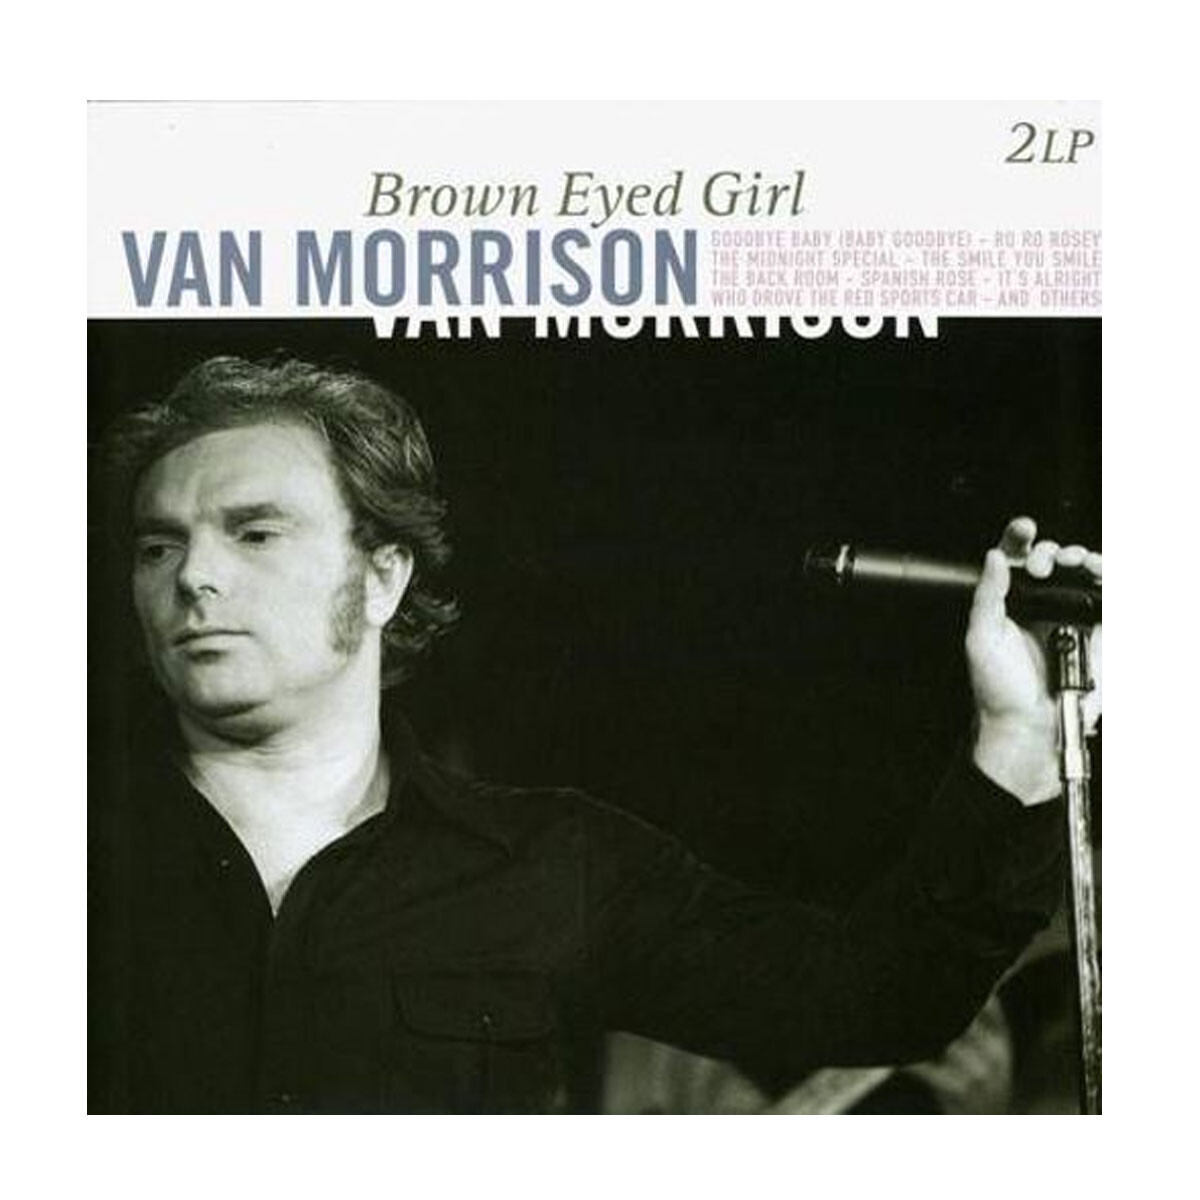 Morrison, Van - Brown Eyed Girl - Vinilo 